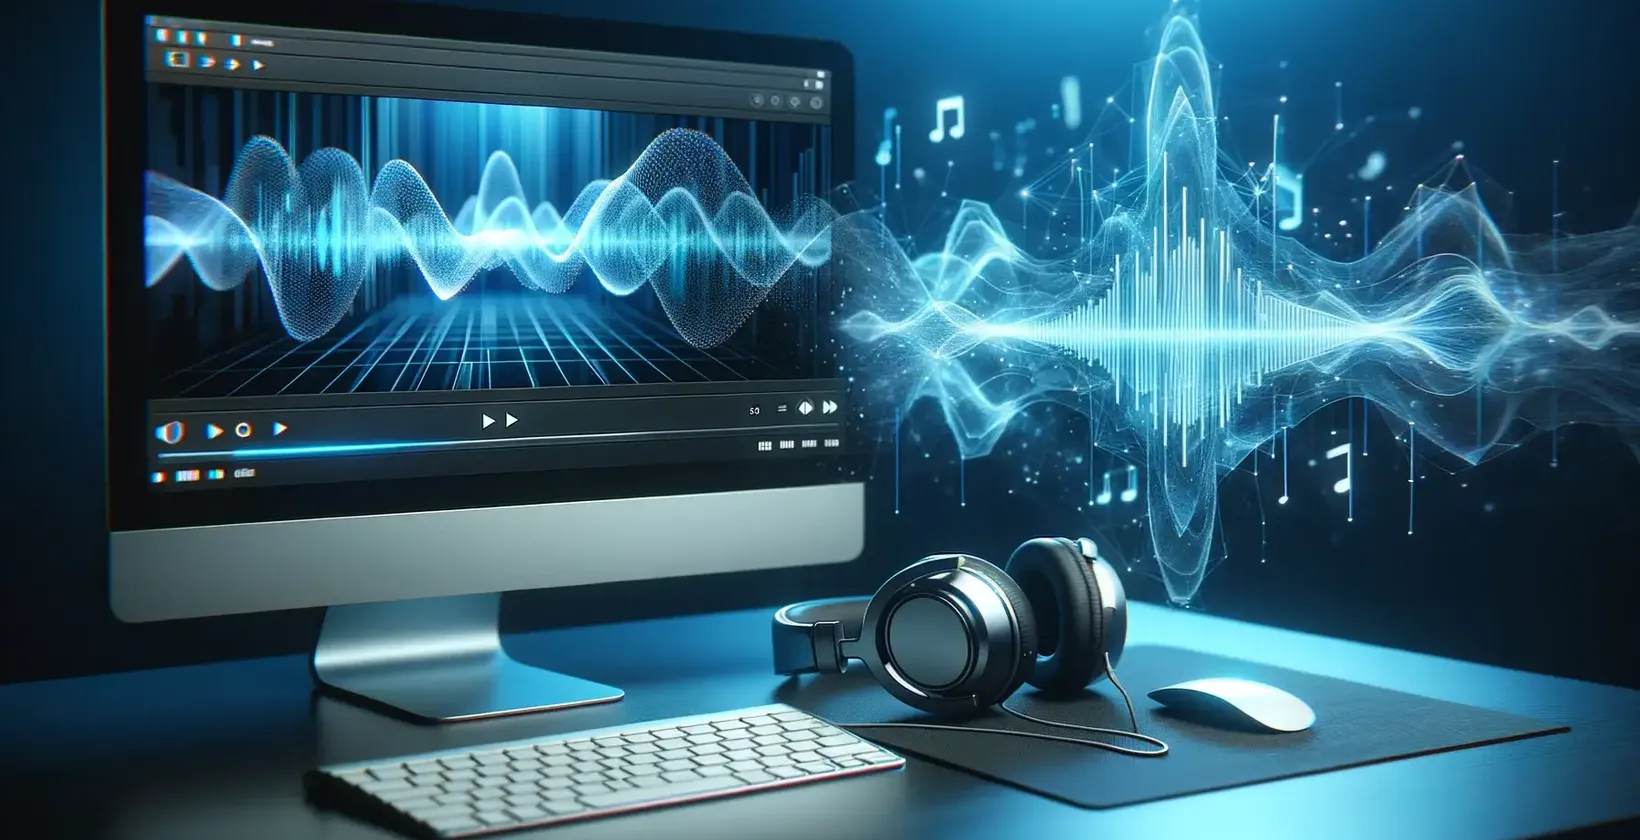 Avansert programvare for lydtranskripsjon representert ved en skjerm med lydkurver og hodetelefoner